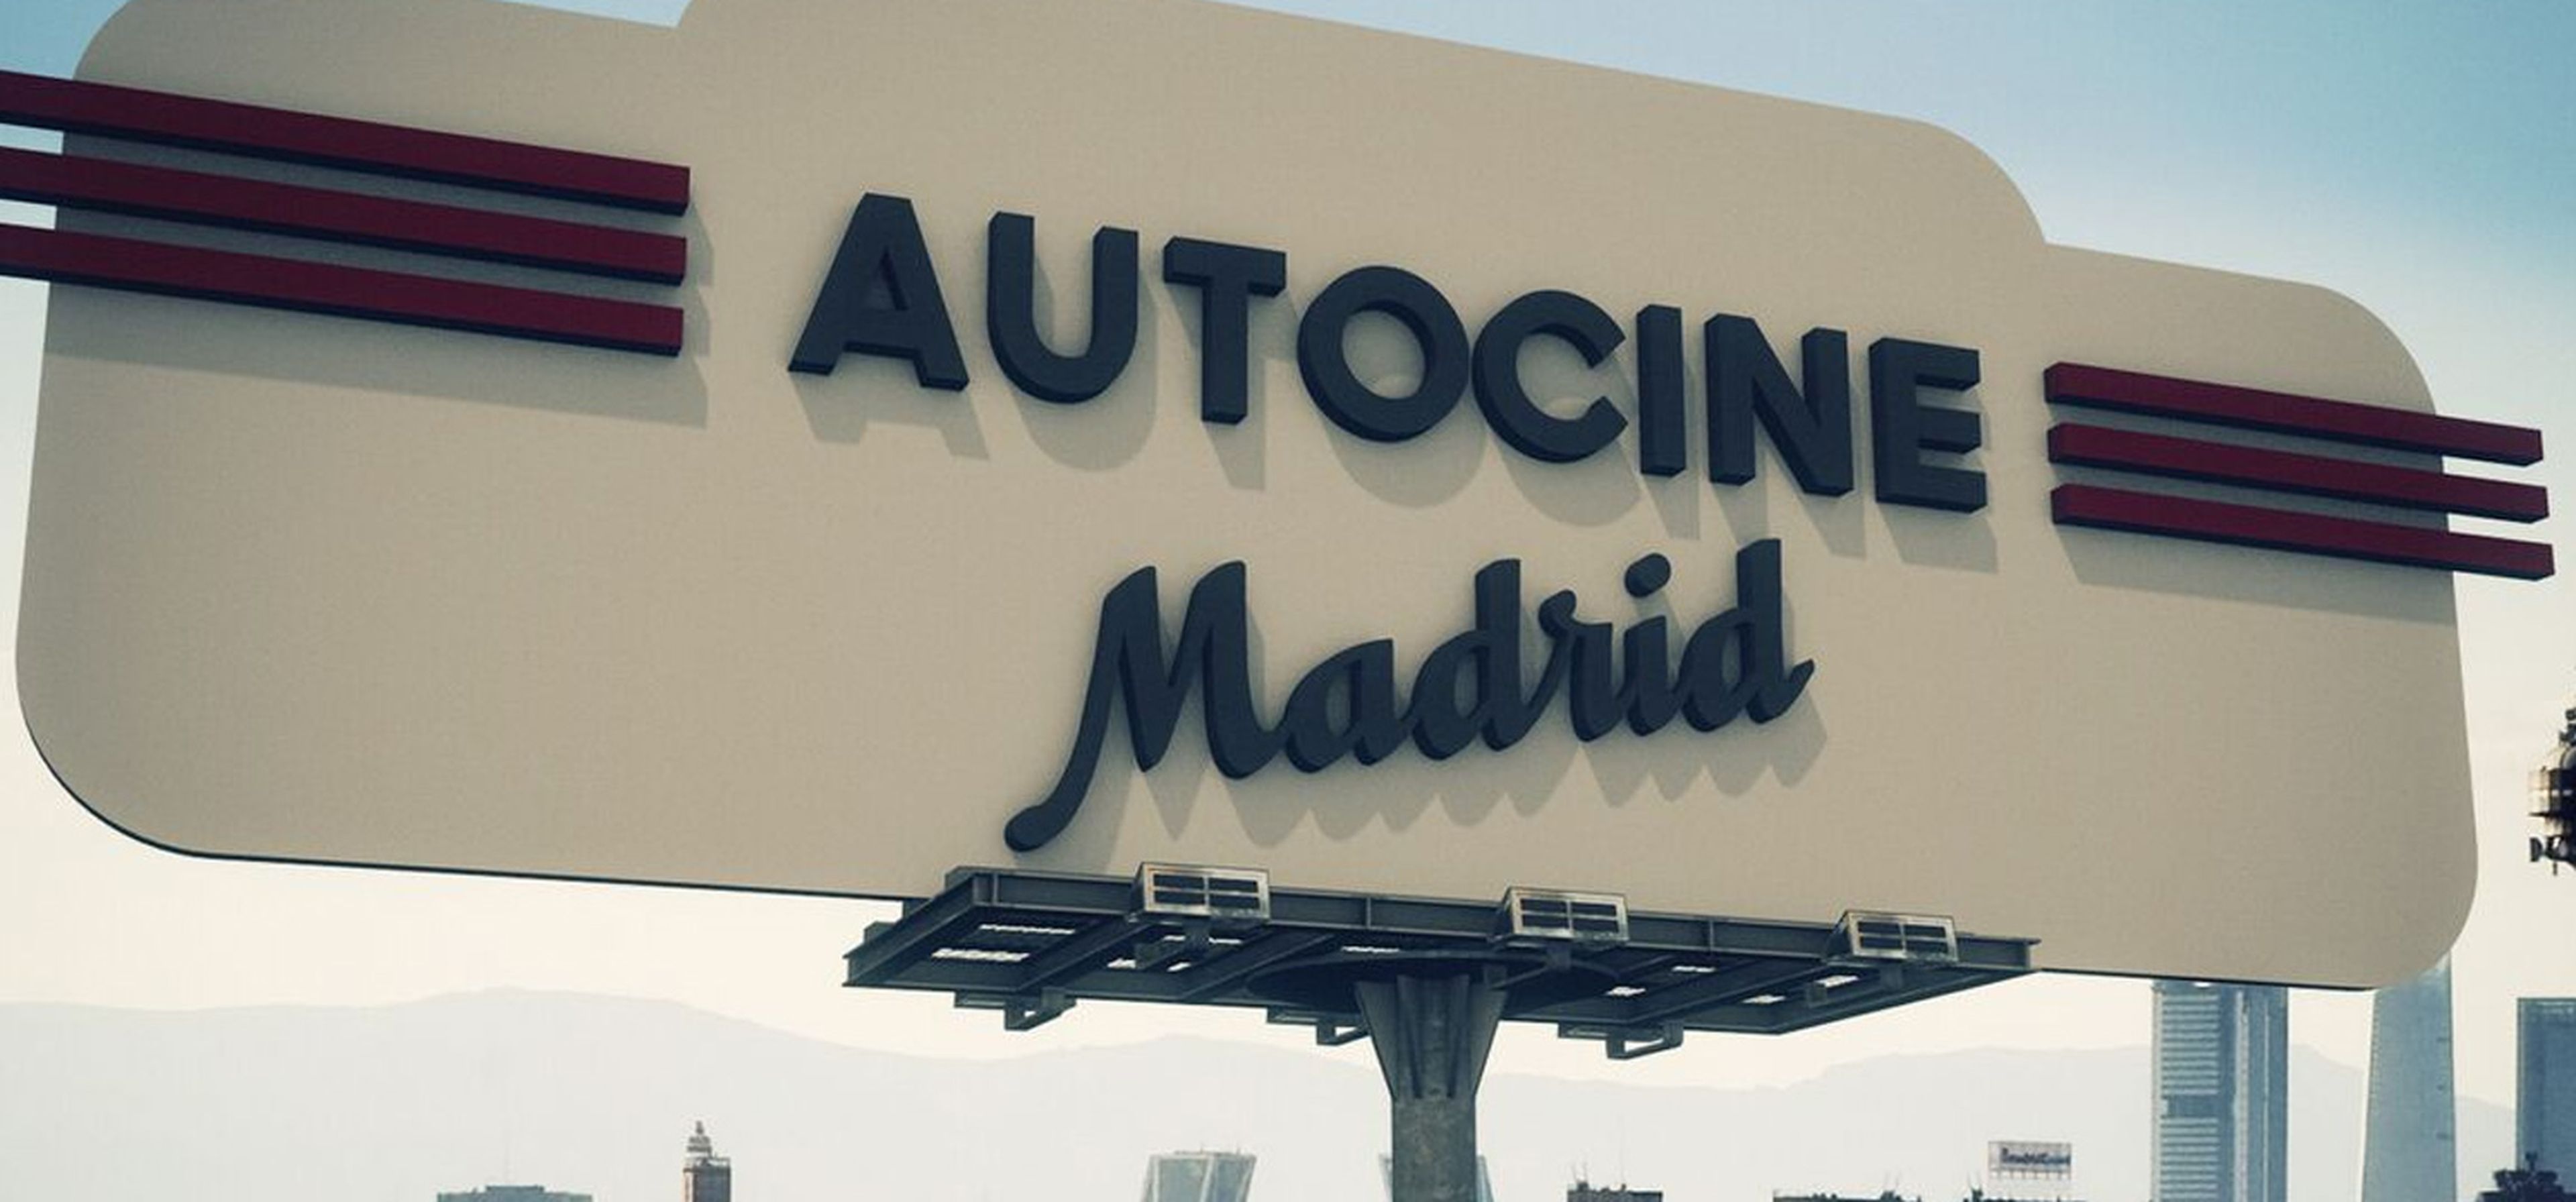 Autocine Madrid